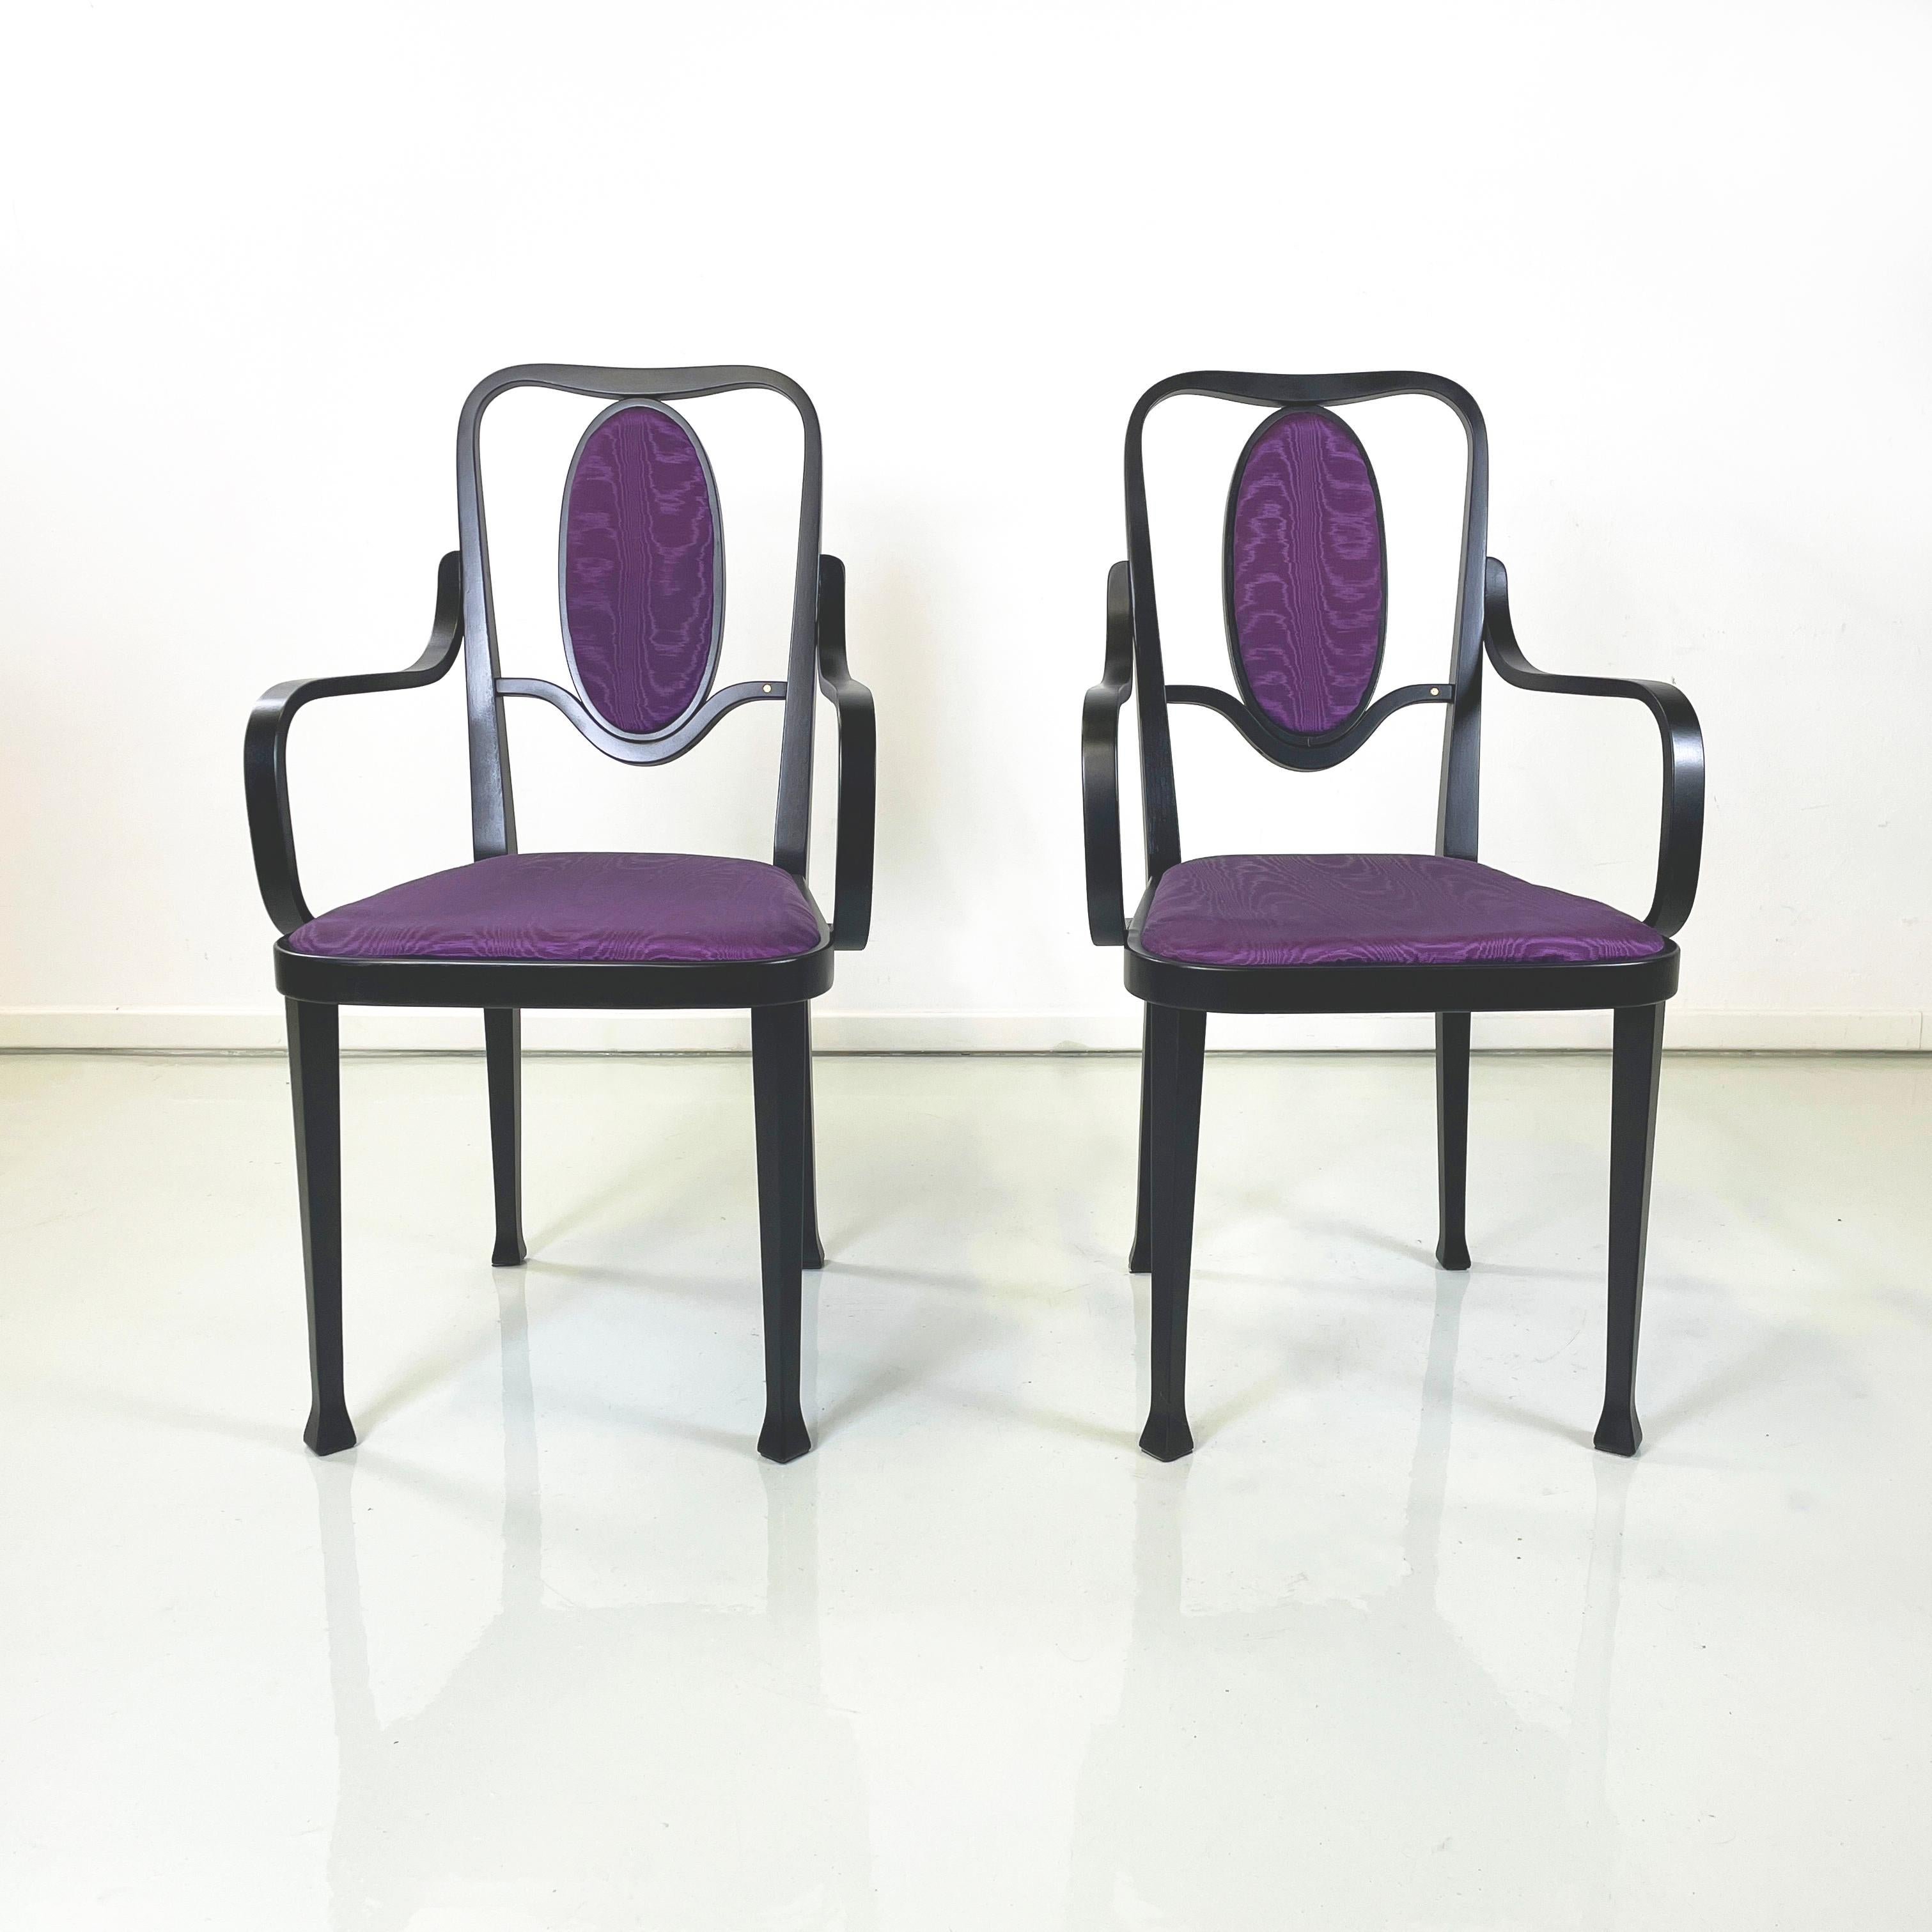 Chaises modernes autrichiennes en bois noir et tissu violet de Marcel Kammerer pour Thonet, années 1990
Paire de chaises à assise carrée et dossier ovale, rembourrées et recouvertes de tissu de soie violet vif. La structure est entièrement réalisée